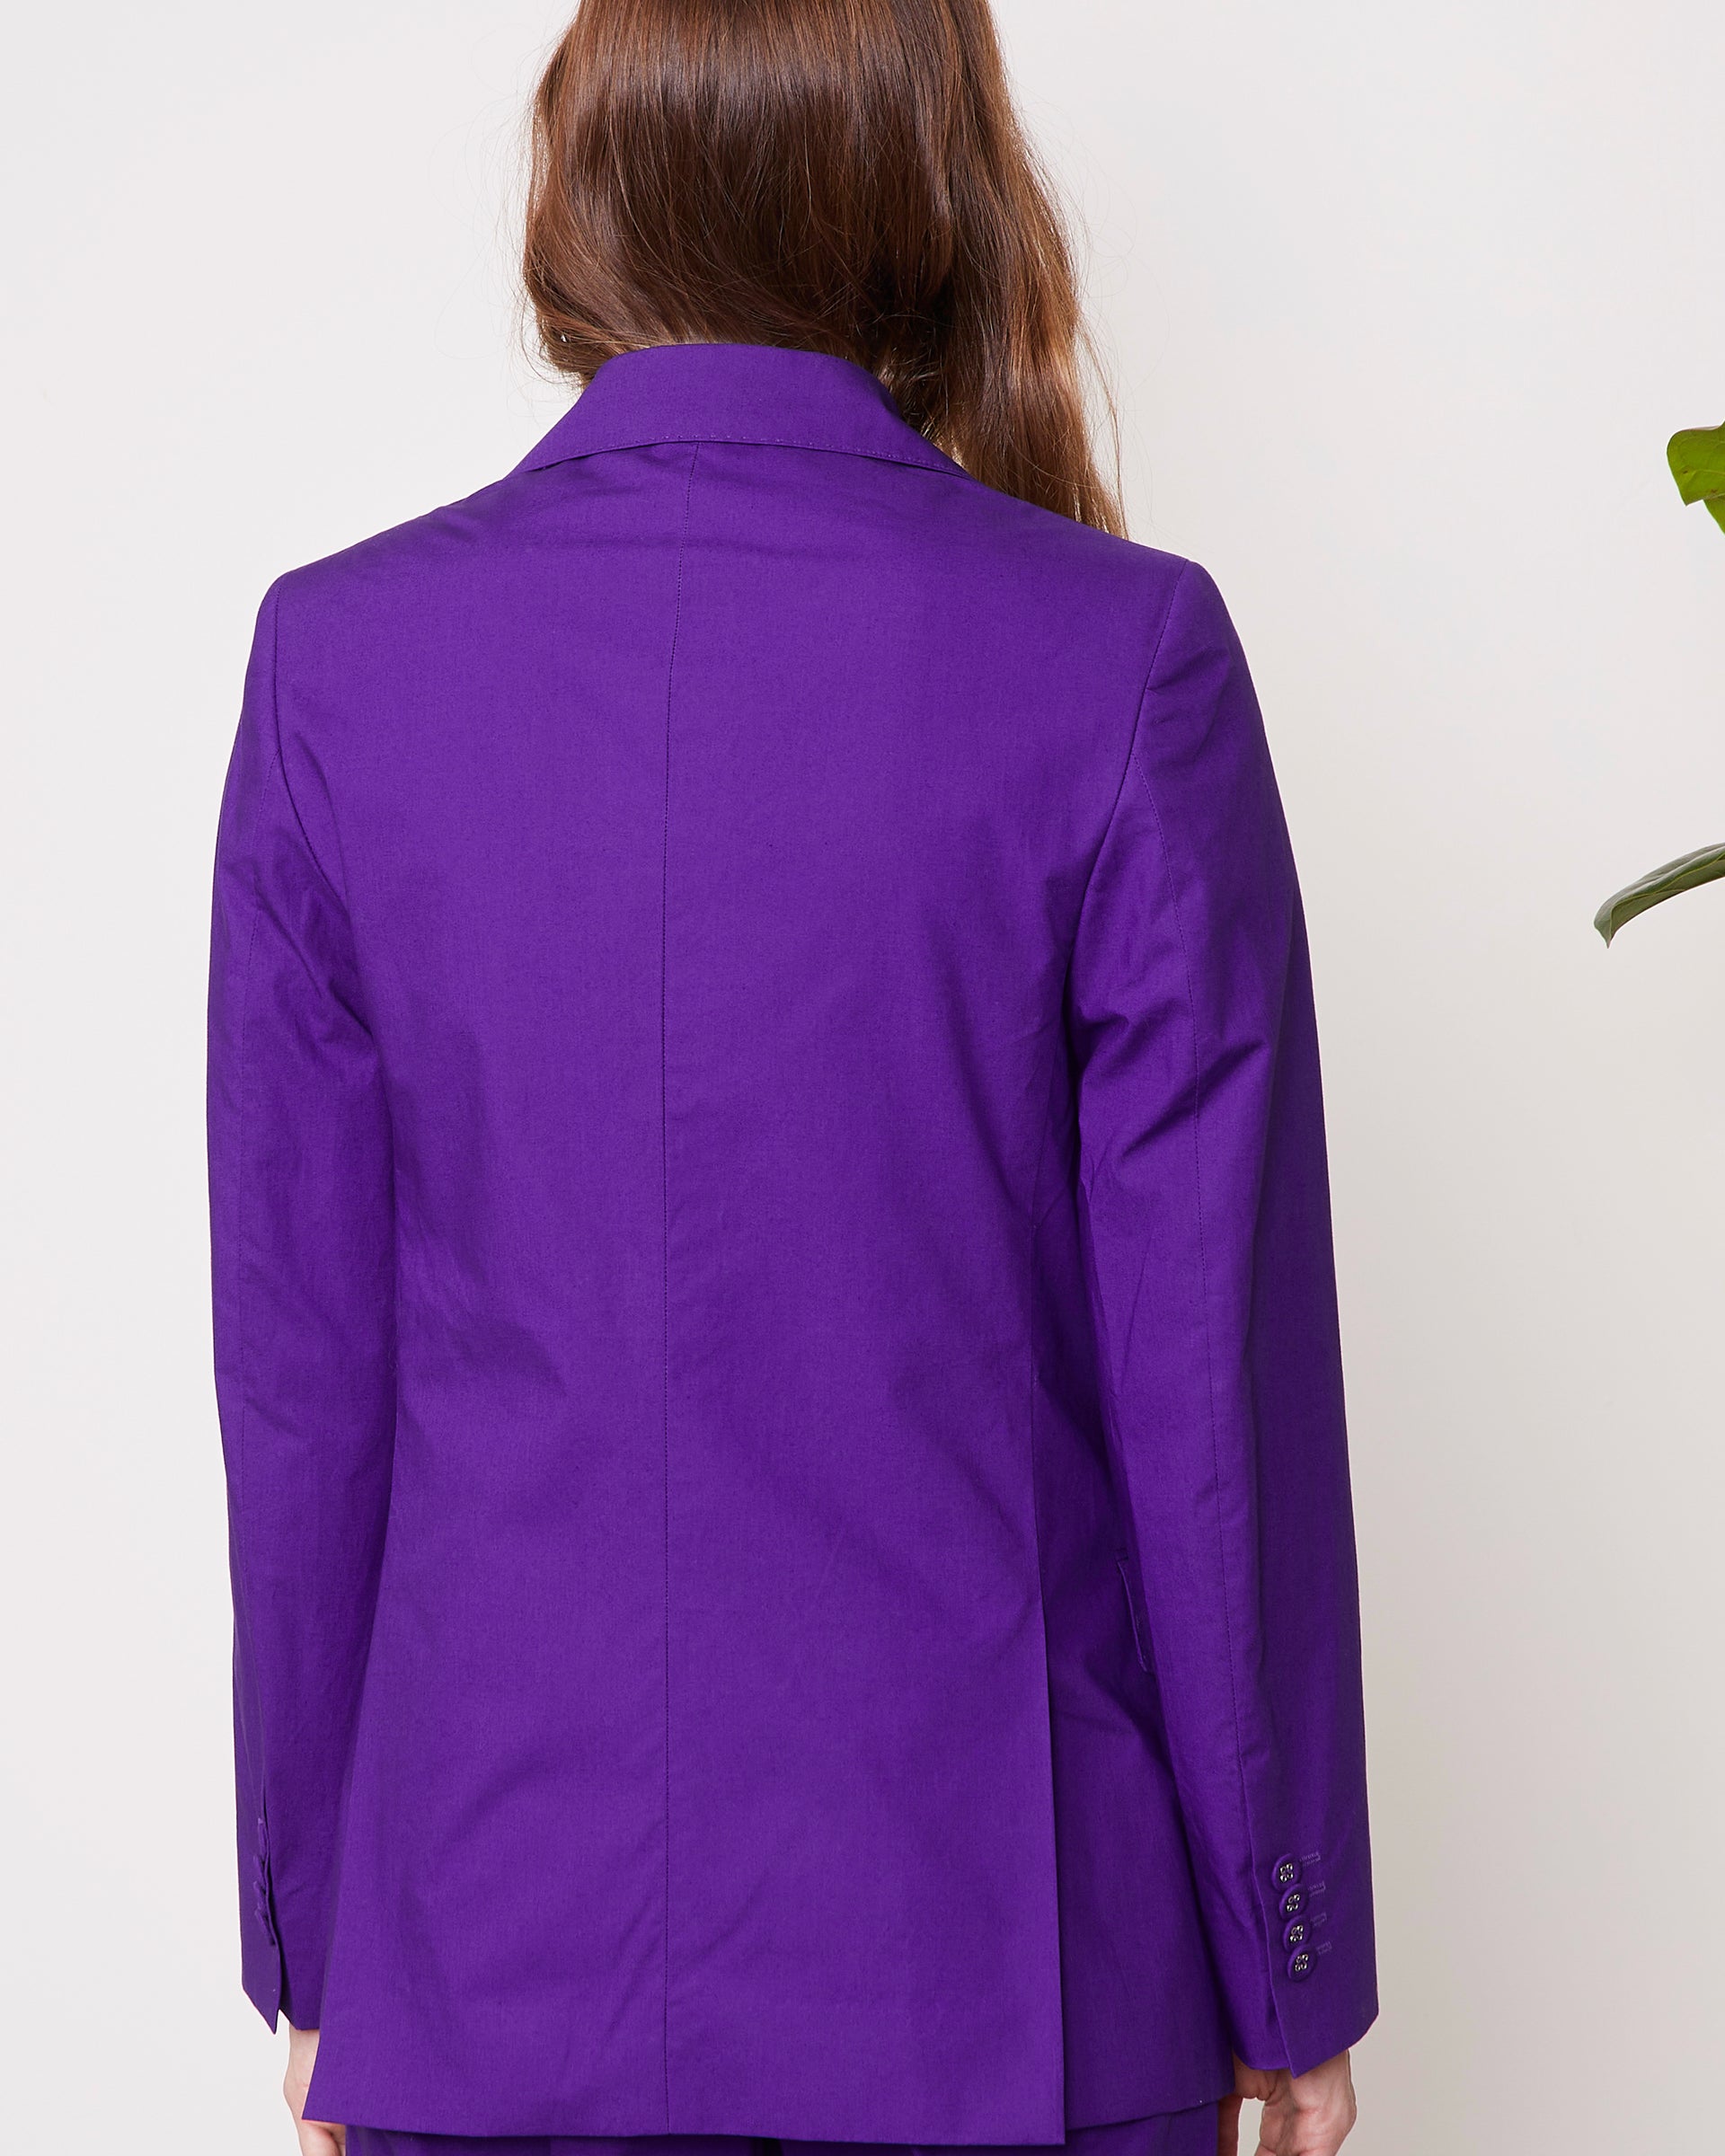 Charlene jacket - Image 4